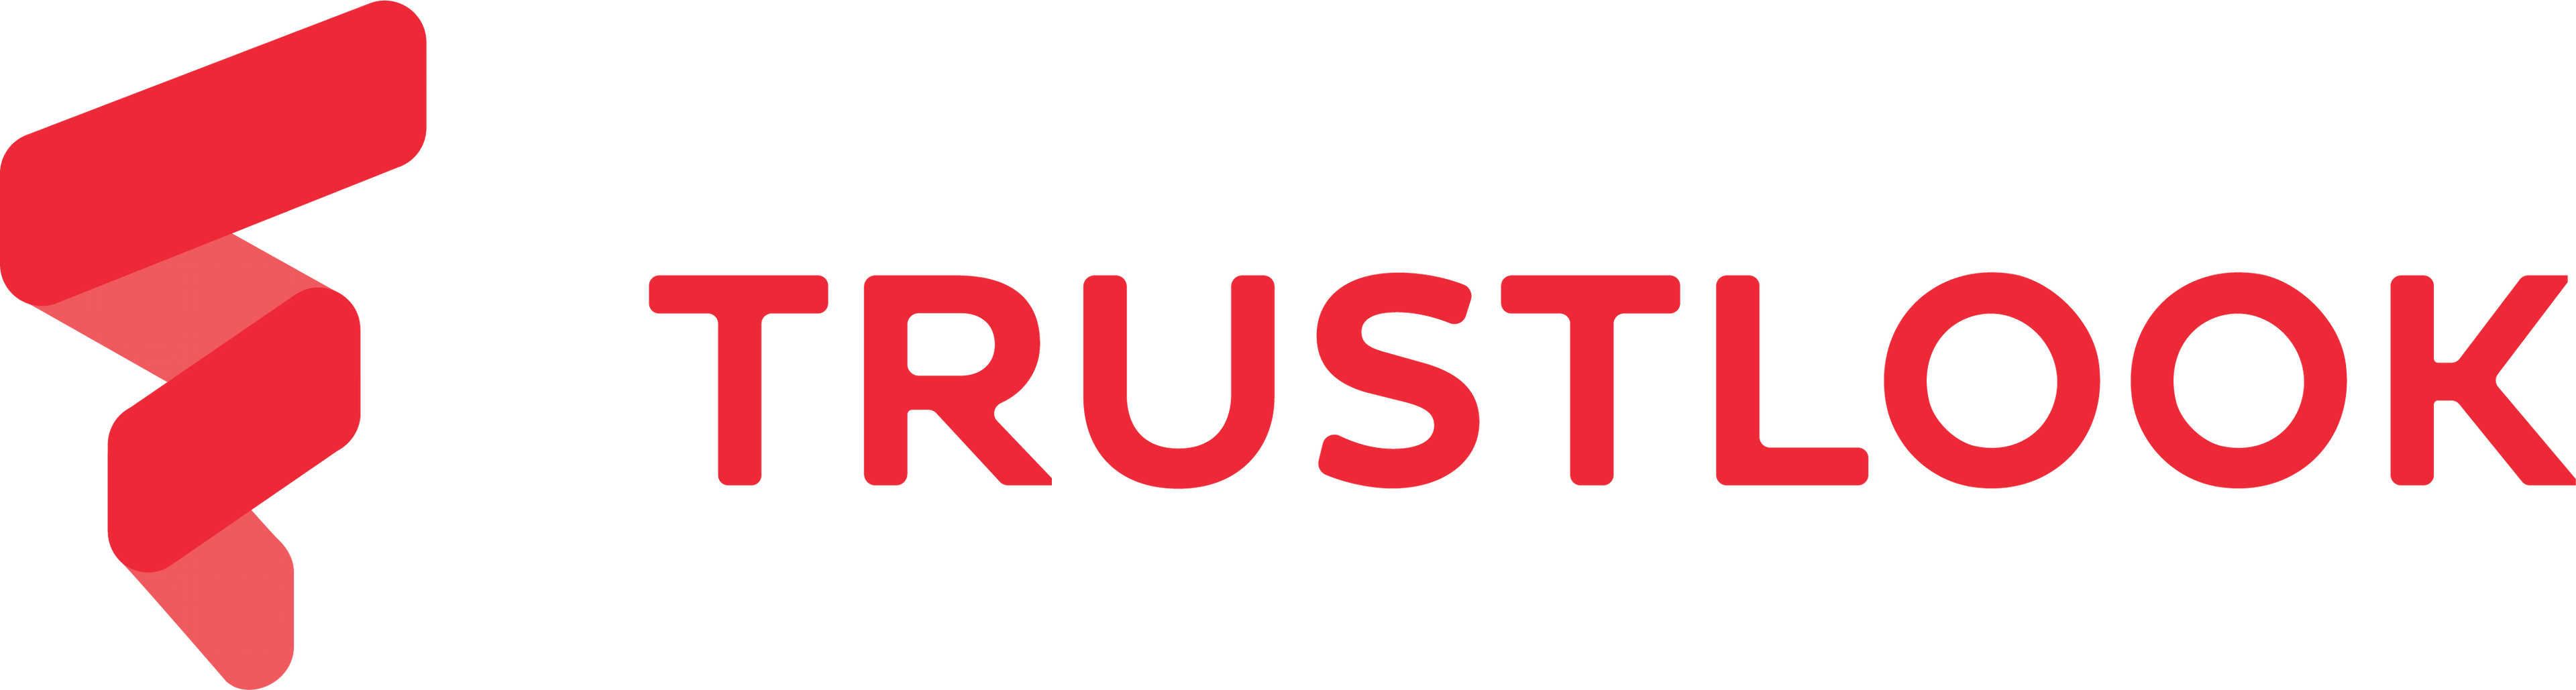 Trustlook logo